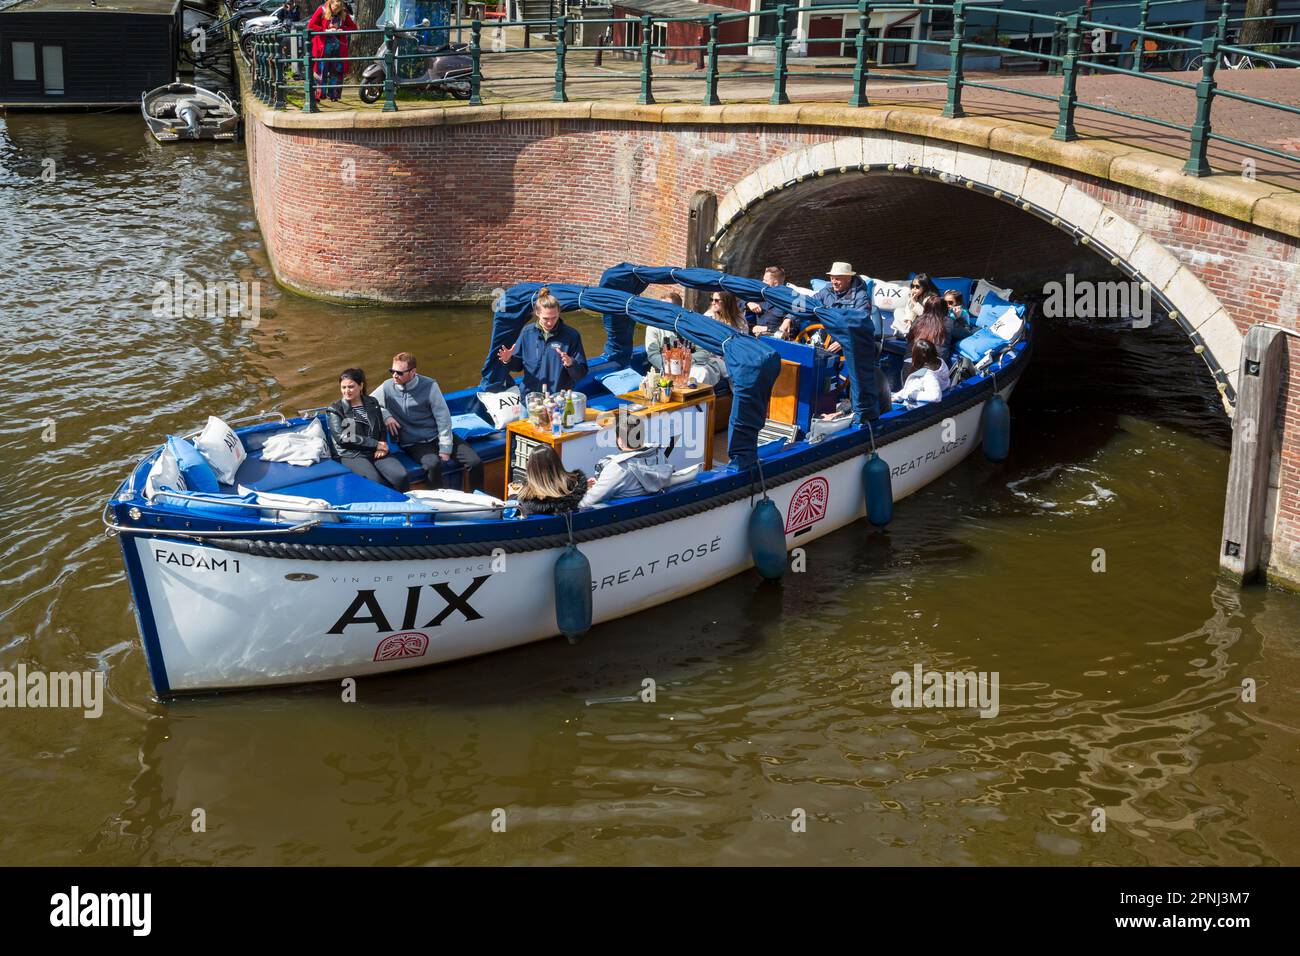 AIX Great Rose luoghi grandi Fadam 1 giro in barca che viaggia lungo il canale ad Amsterdam, Olanda, Paesi Bassi nel mese di aprile Foto Stock